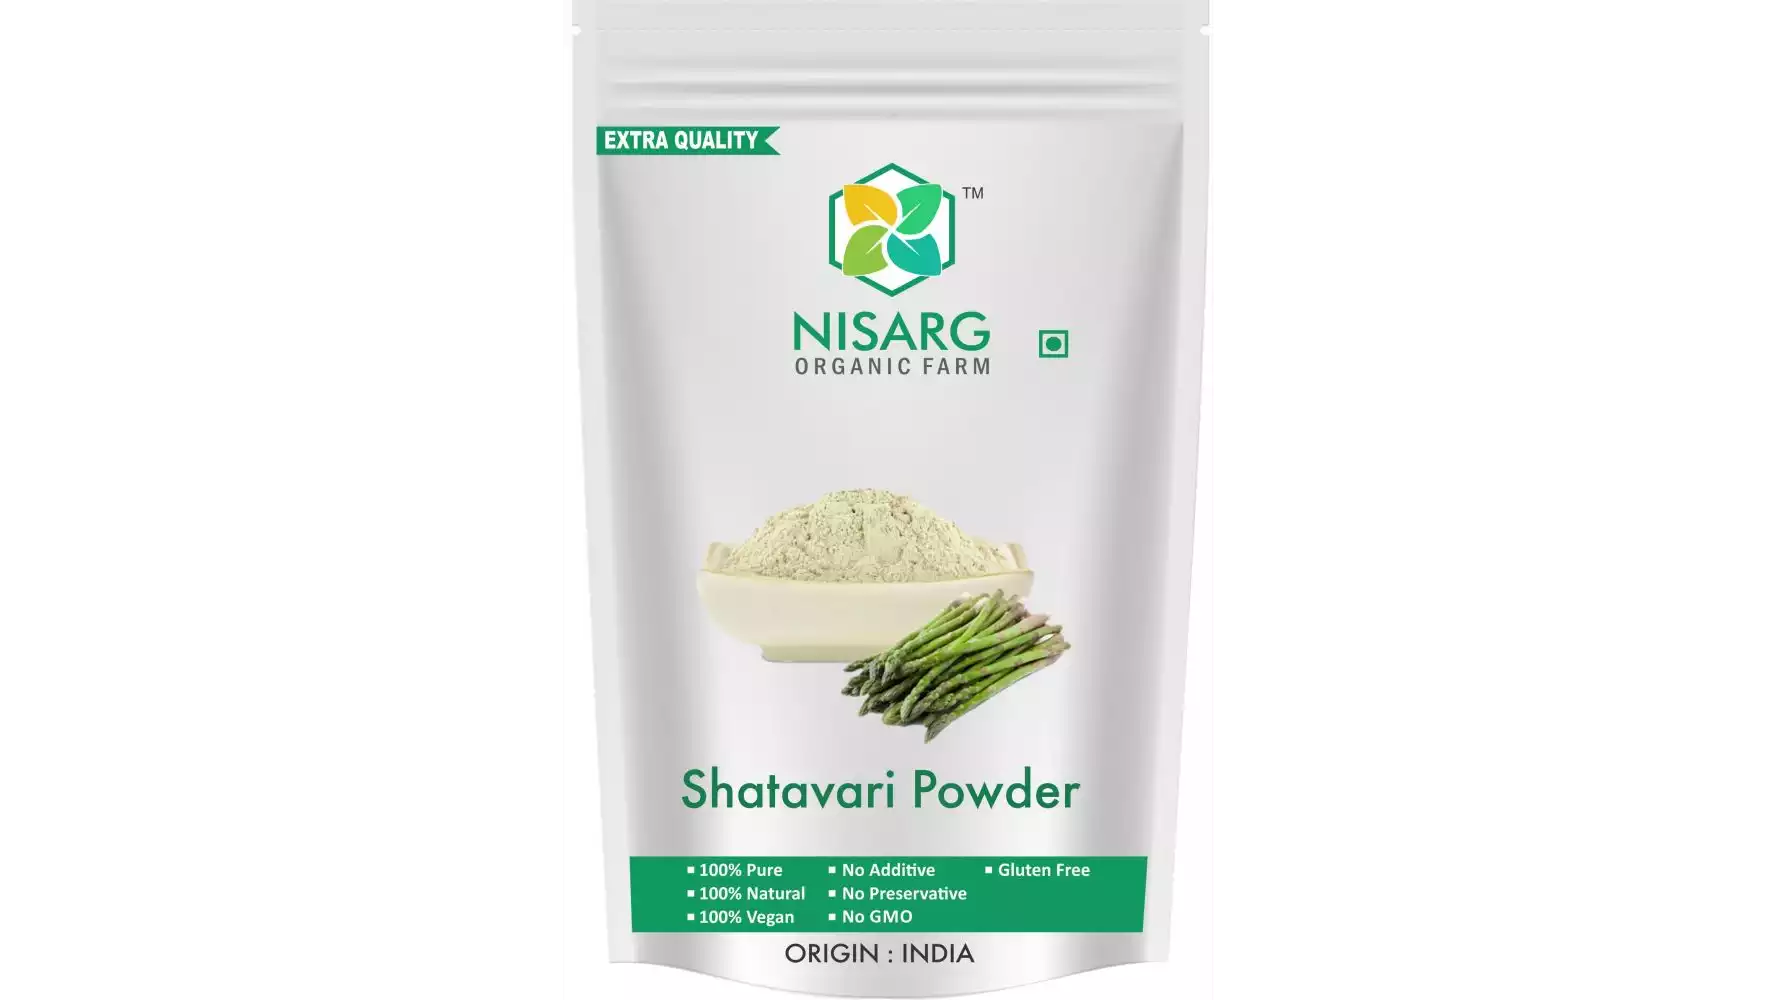 Nisarg Organic Farm Shatavari Powder (500g)